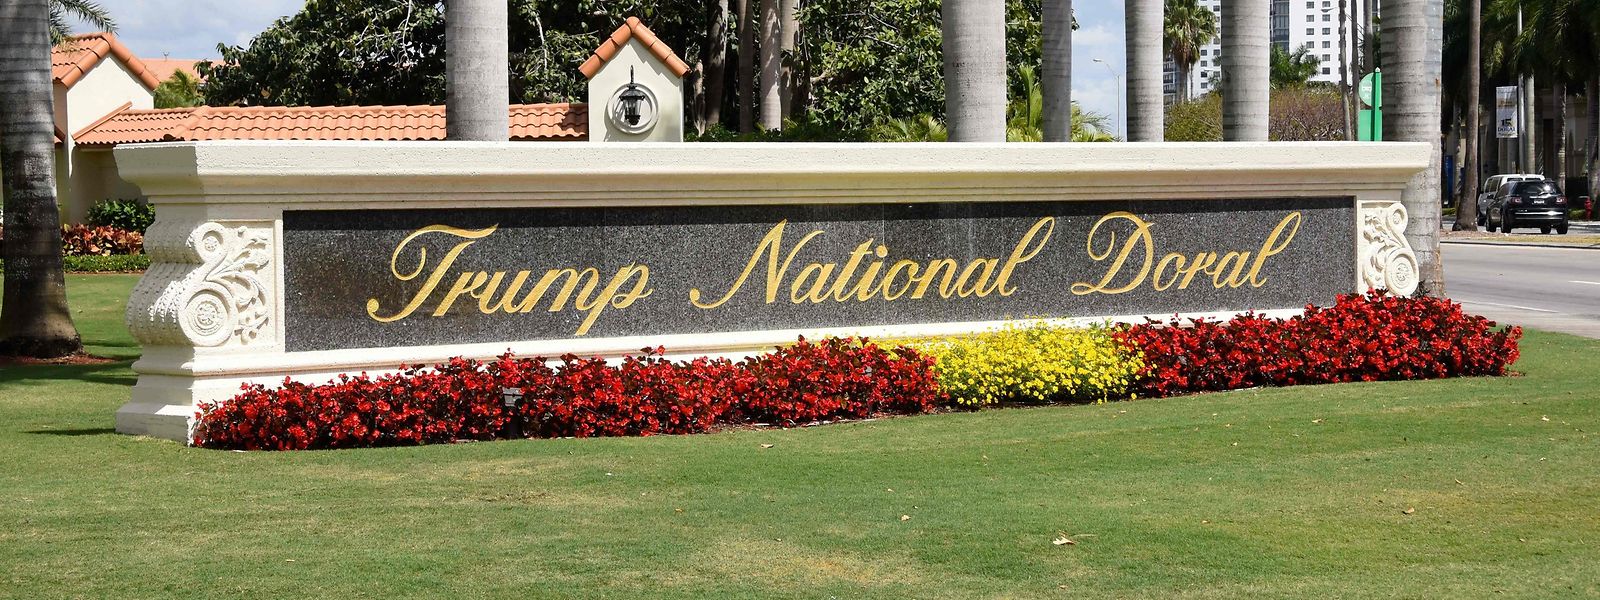 Das Trump National Doral kommt nicht mehr als Gipfel-Hotel in Frage.